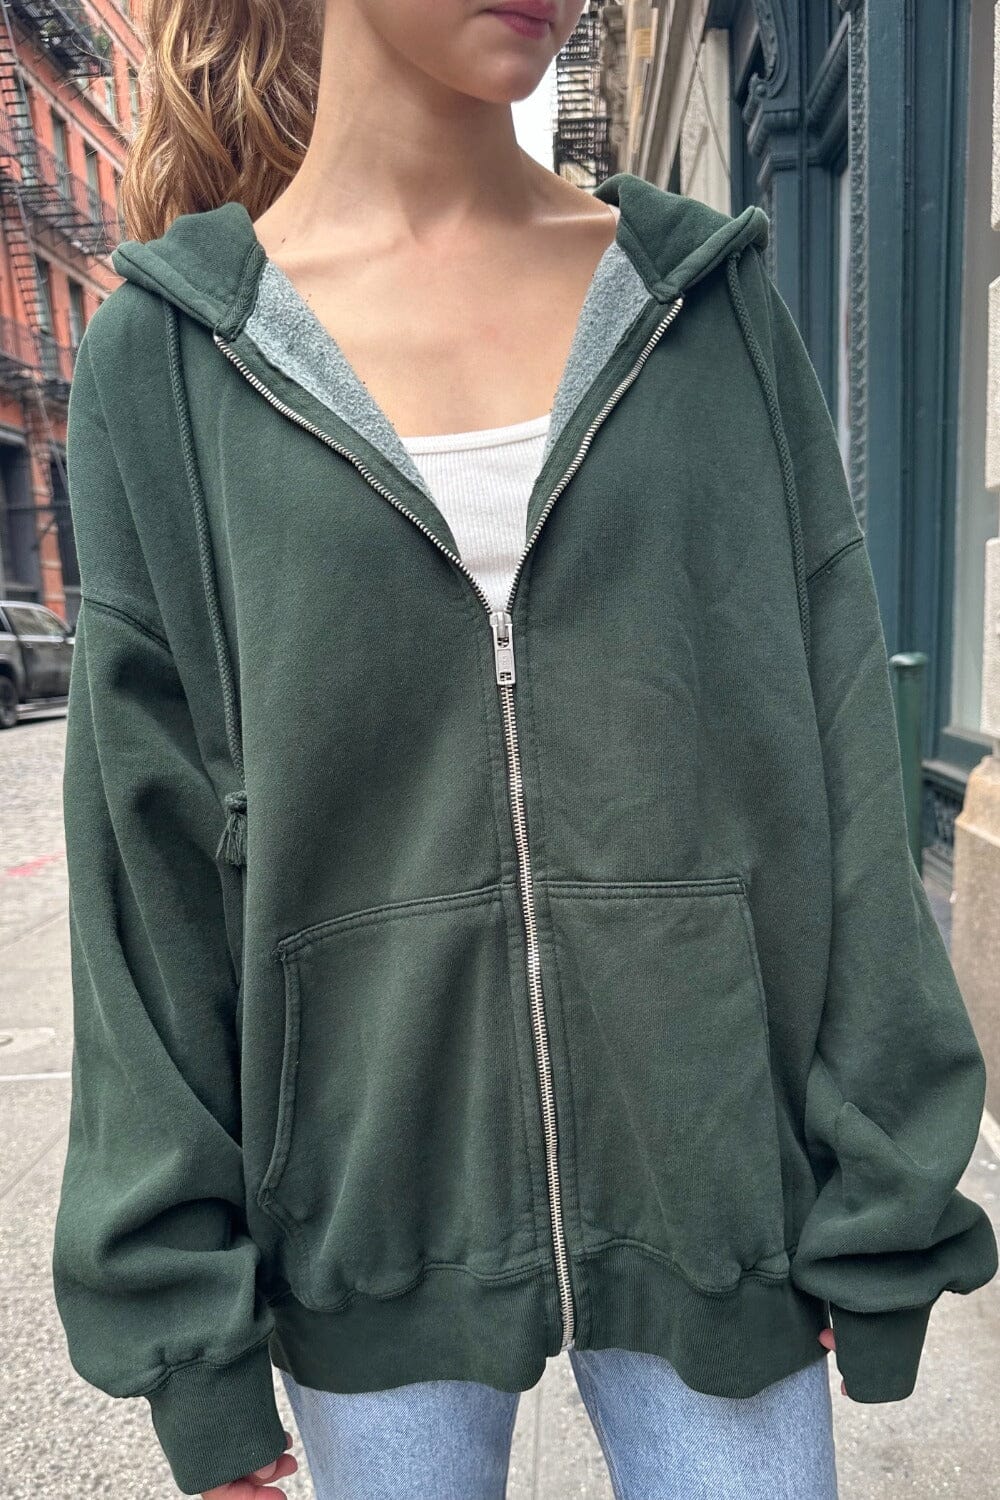 Brandy Melville zip up hoodie